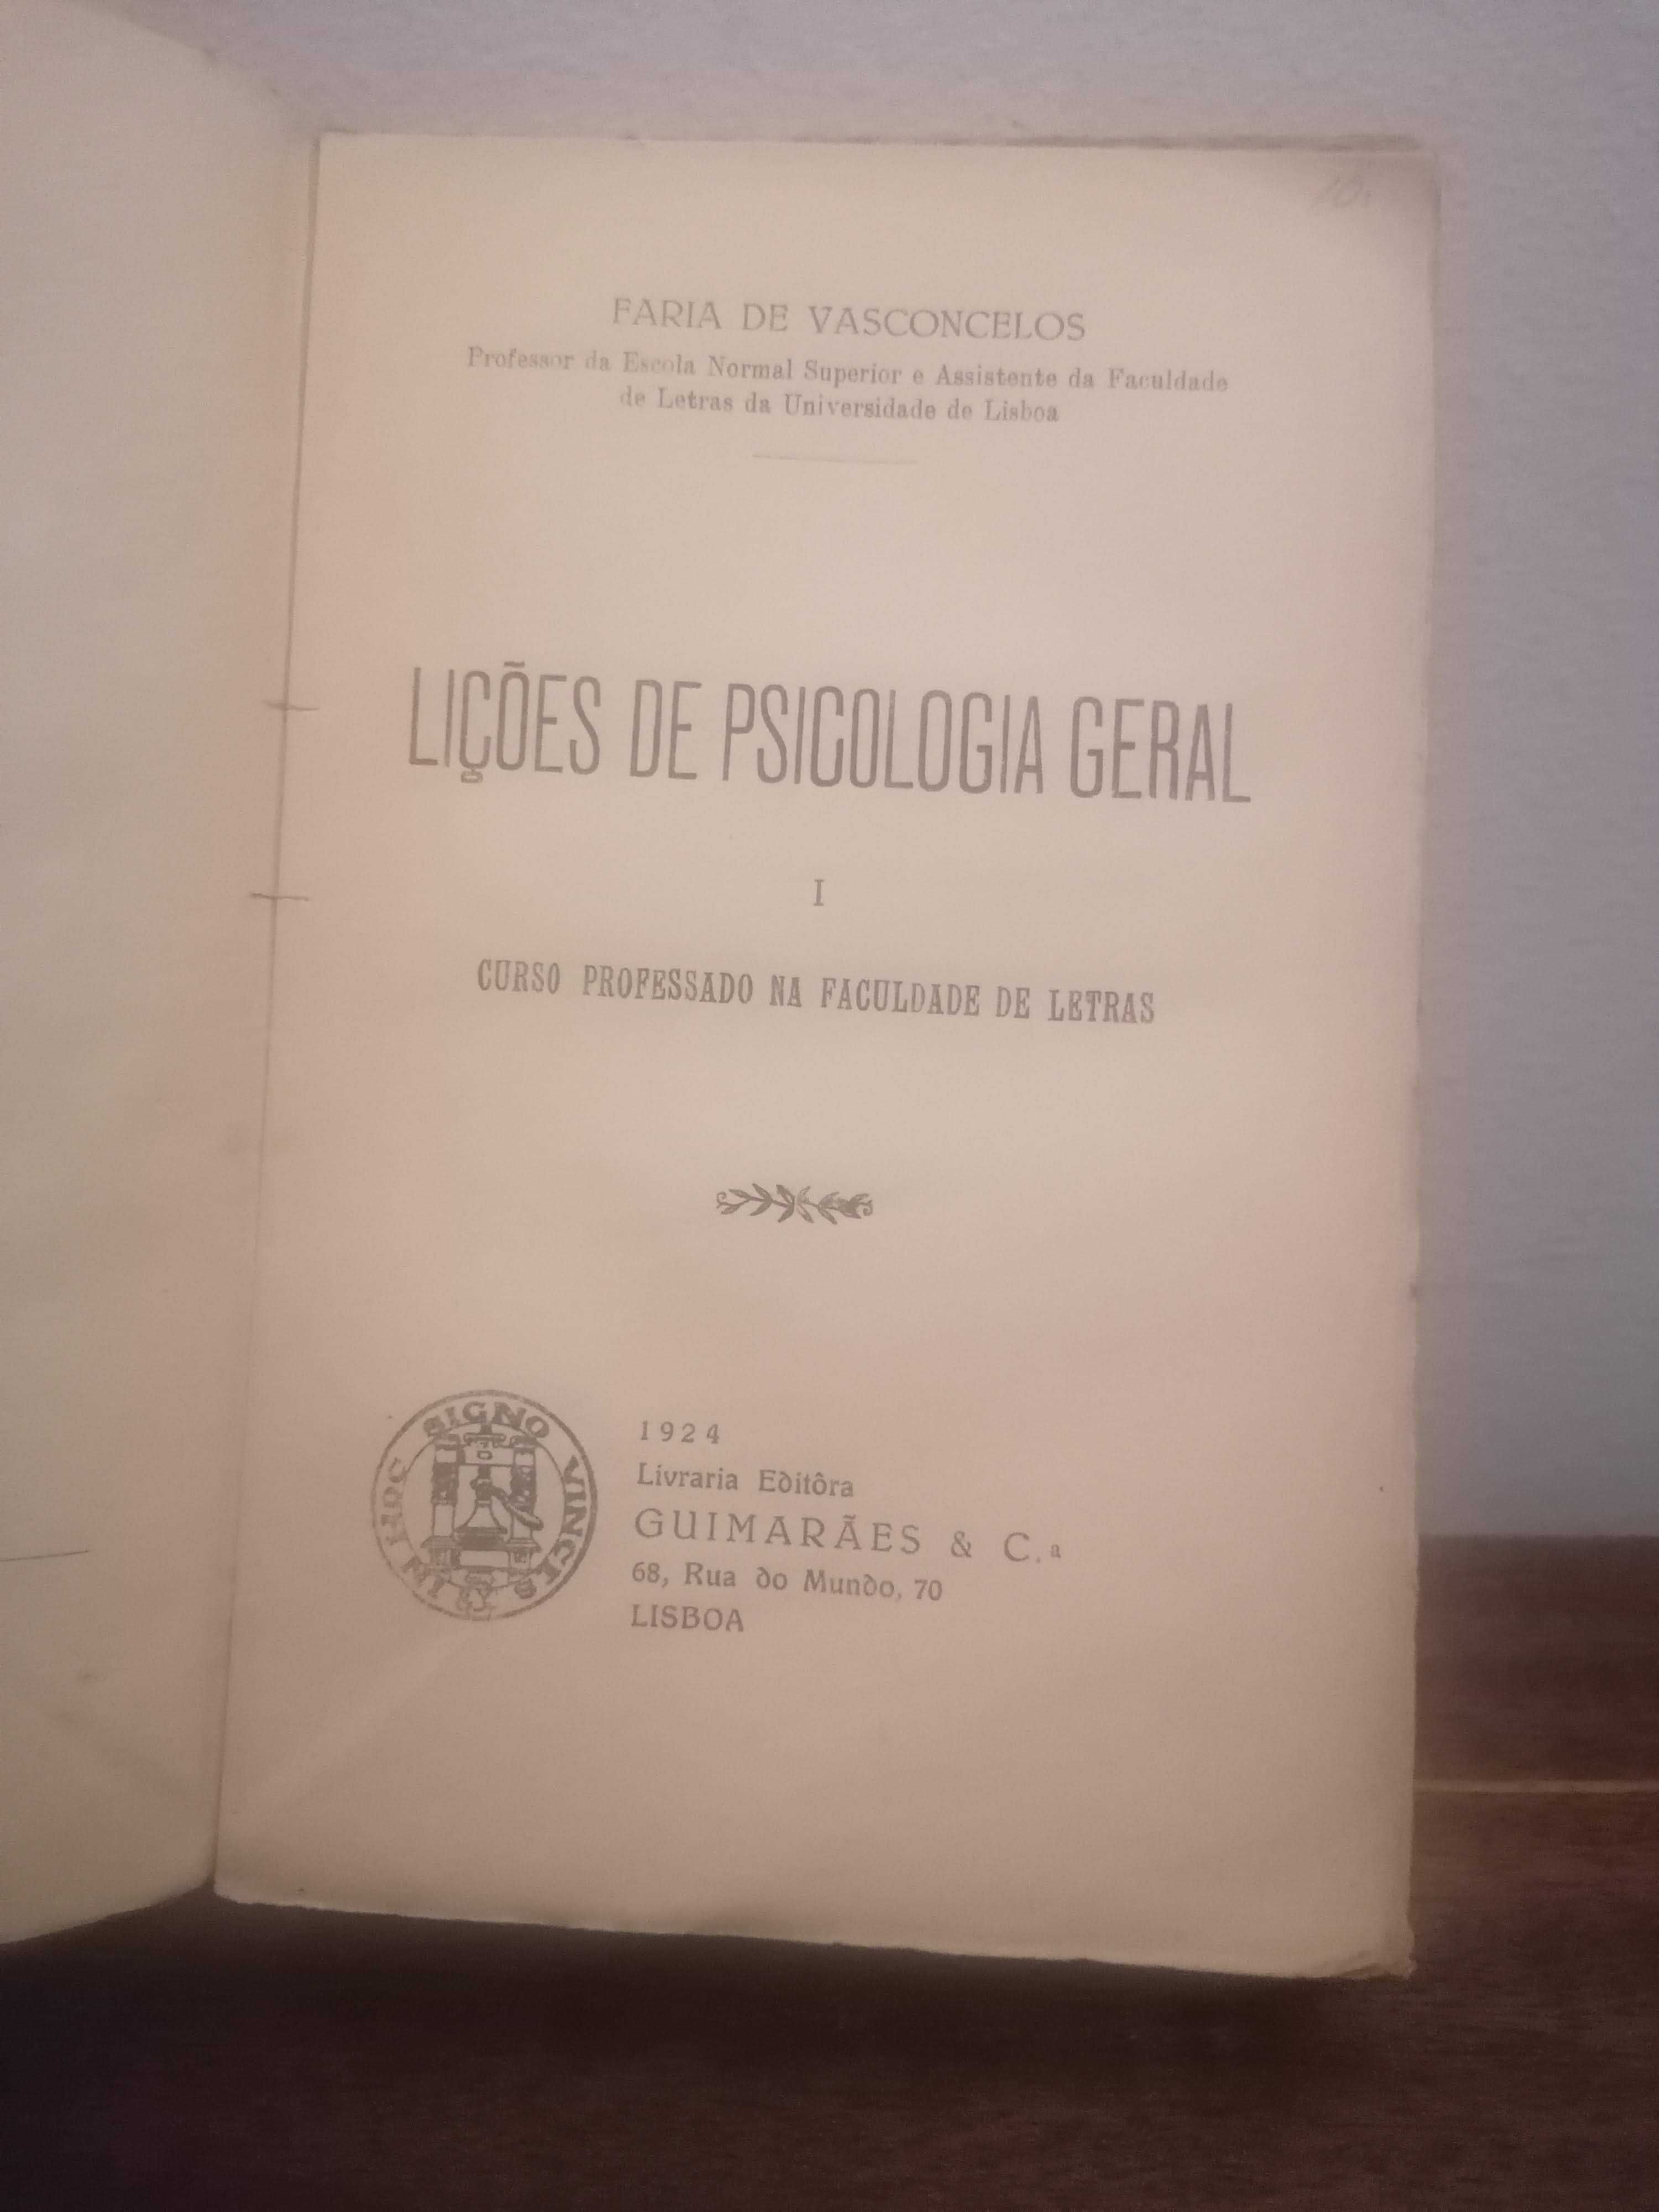 Livro  RARO " Lições de Psicologia Geral " de Faria de Vasconcelos